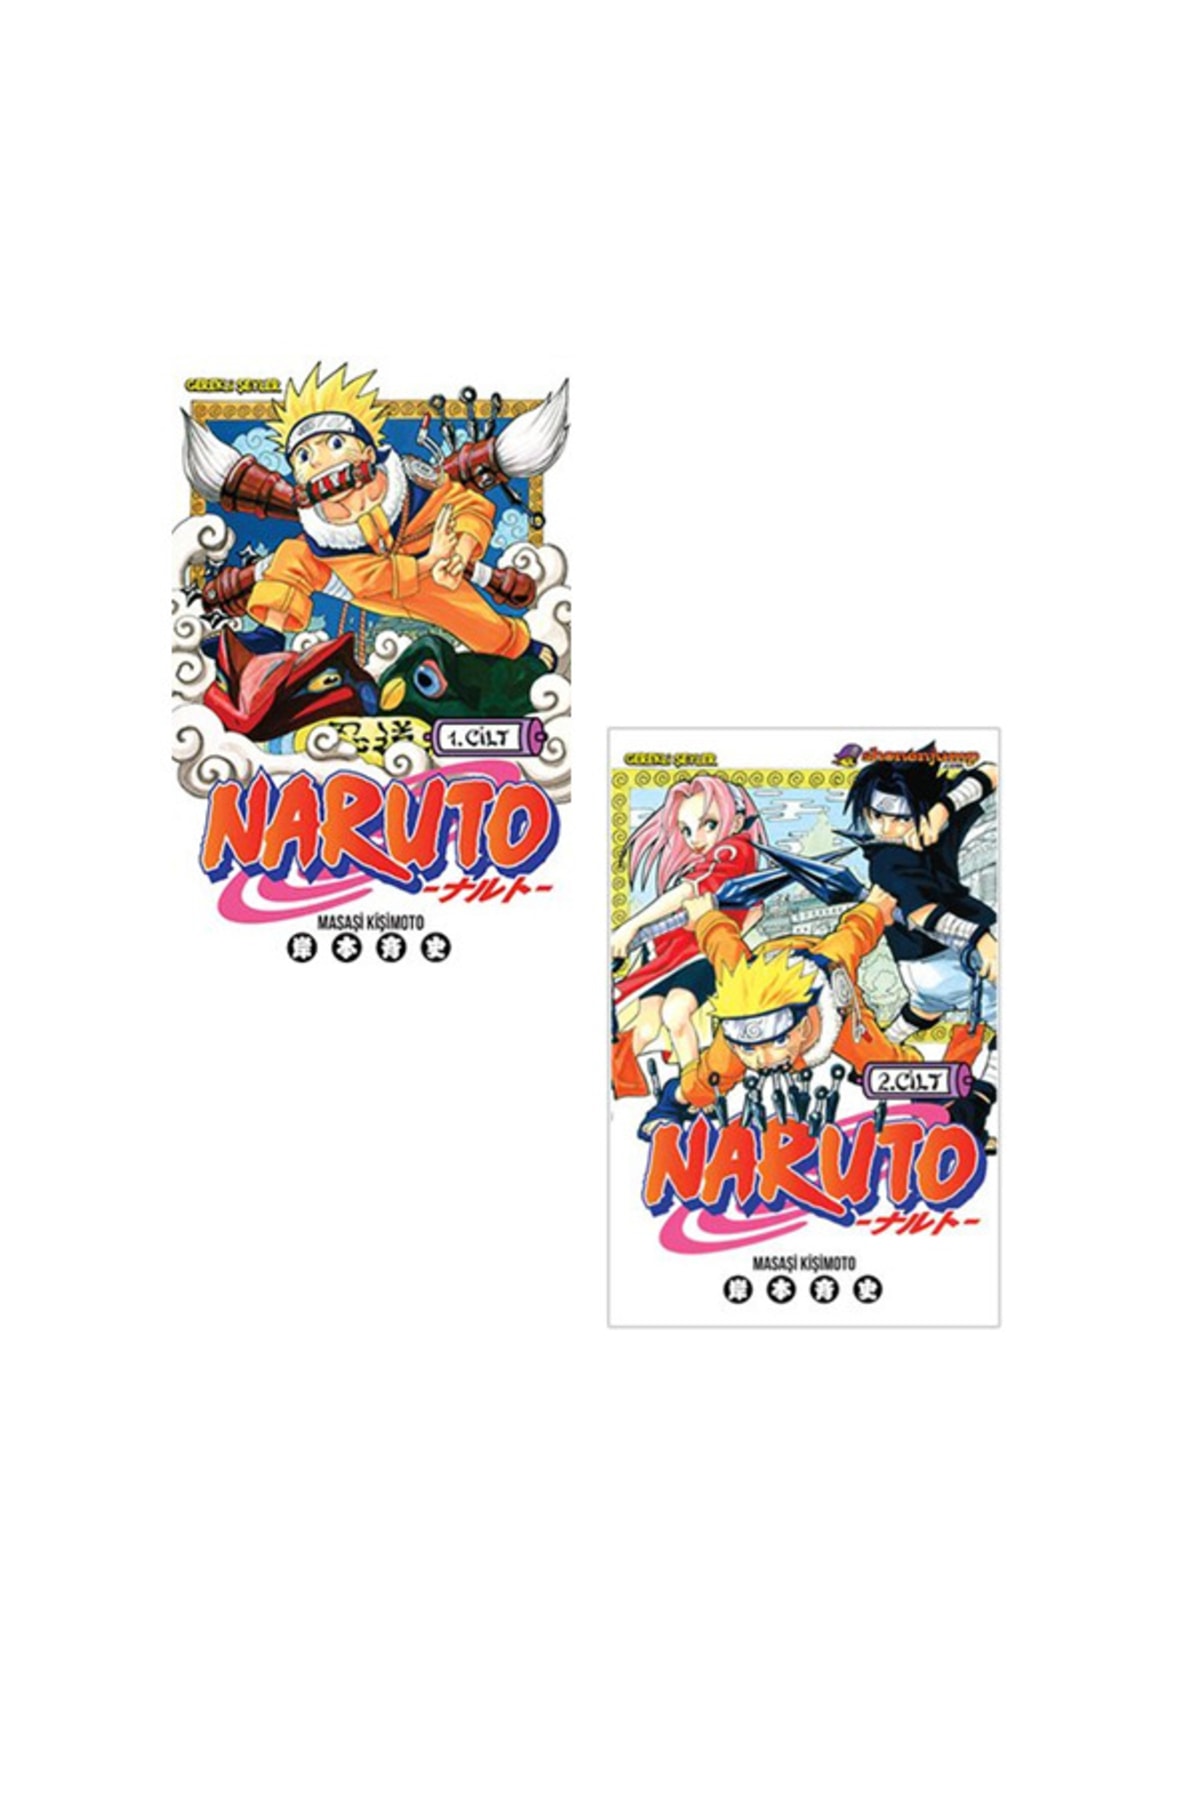 Gerekli Şeyler Yayıncılık Naruto 1-2. Ciltler Manga Seti - Masaşi Kişimoto